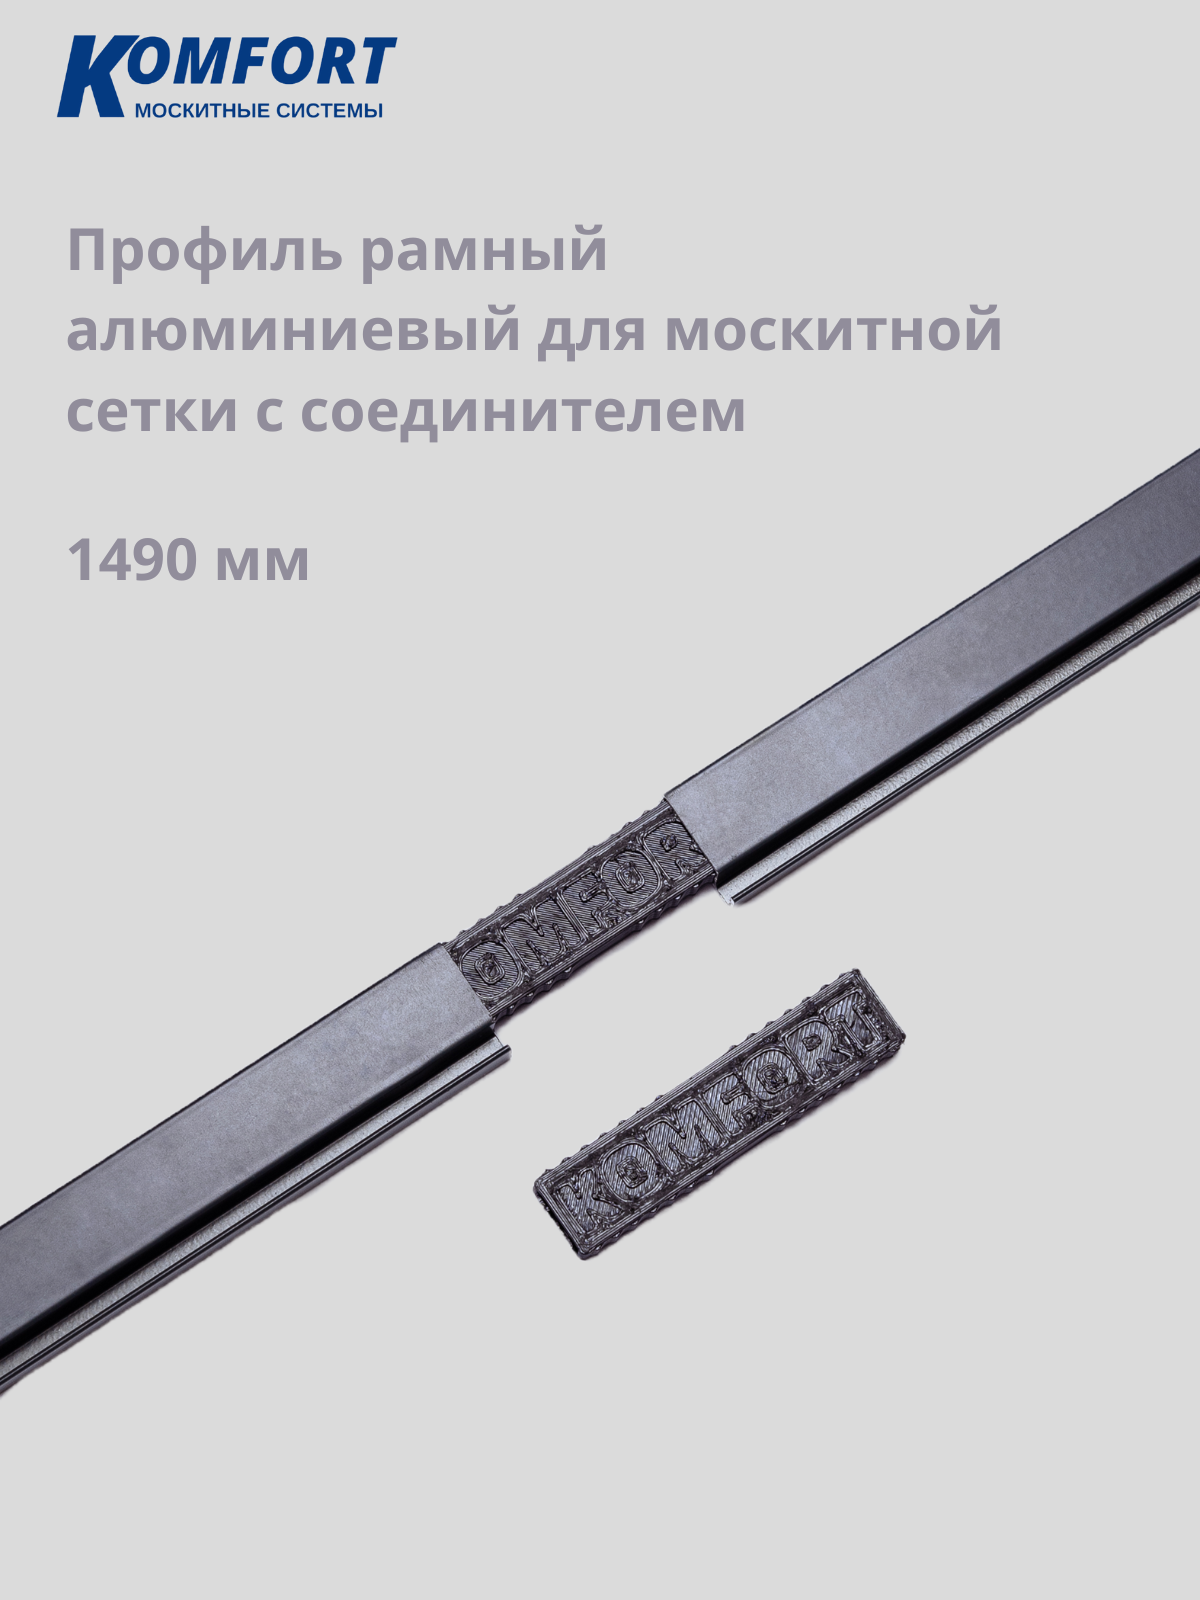 Профиль рамный алюминиевый для москитной сетки 1490 мм 2 шт с соединителем 1 шт